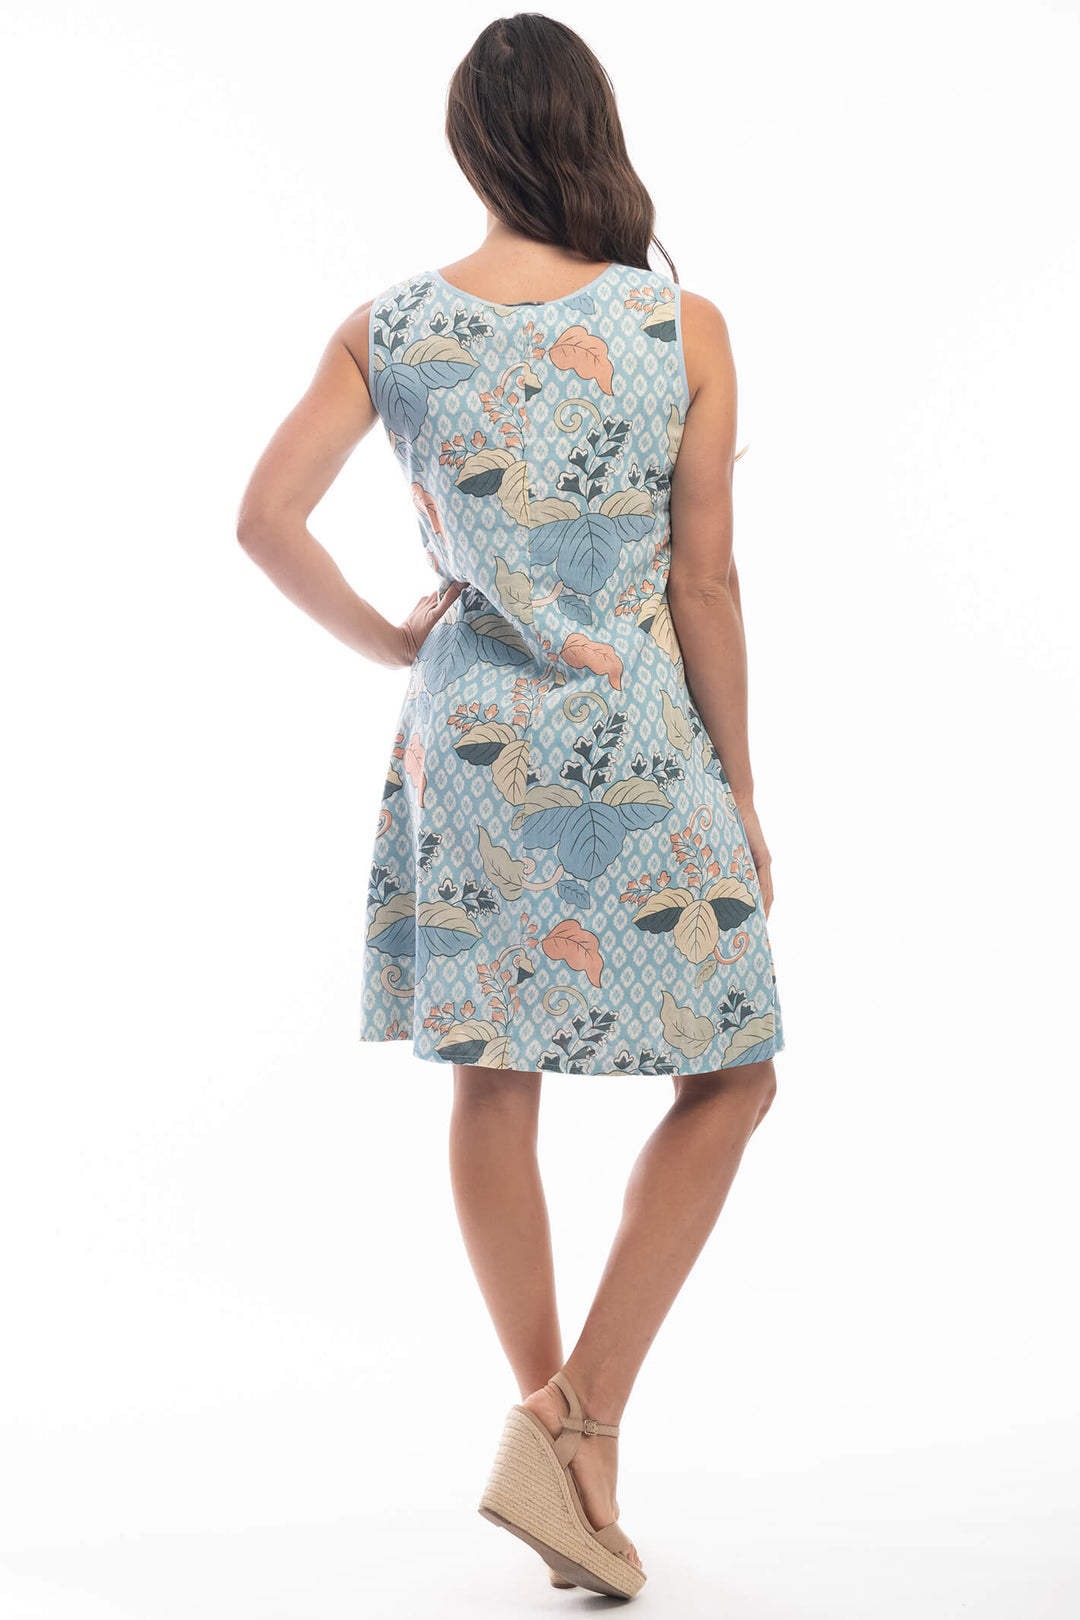 Orientique 2135 Blue Hallstat Reversible Print Shift Dress - Experience Boutique